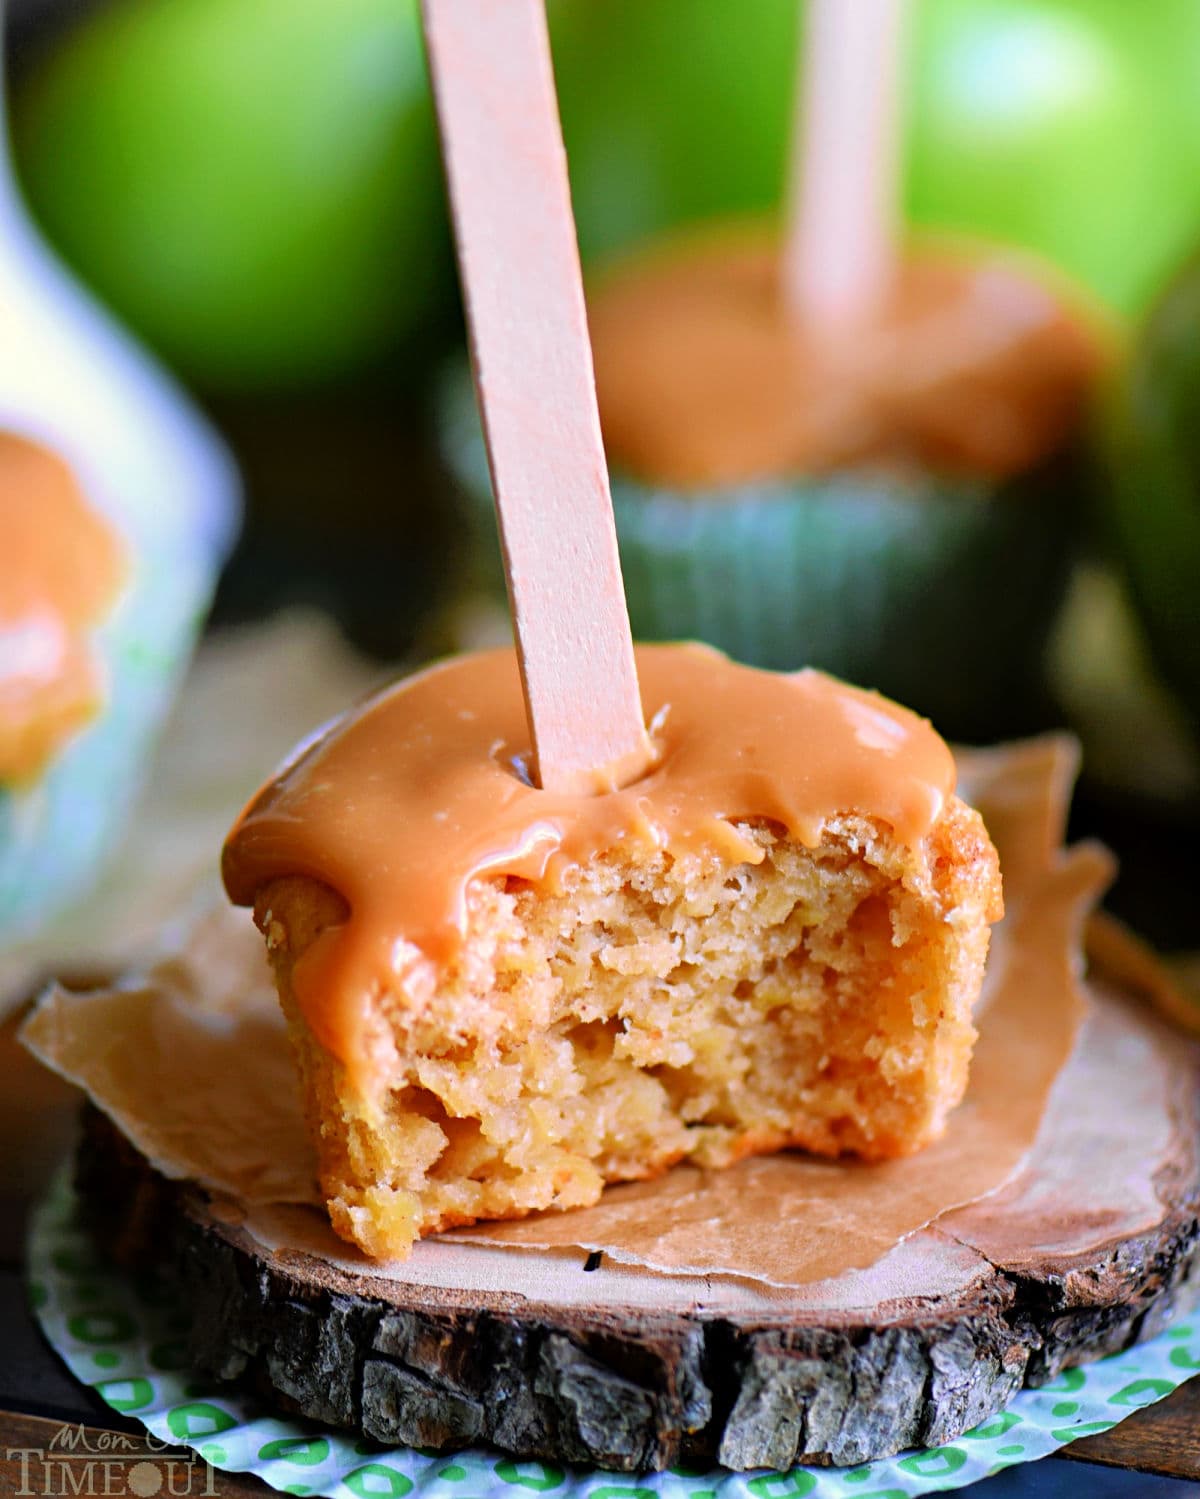 Cupcake alla mela caramellata seduto su un piccolo sottobicchiere di legno con un morso preso da esso.